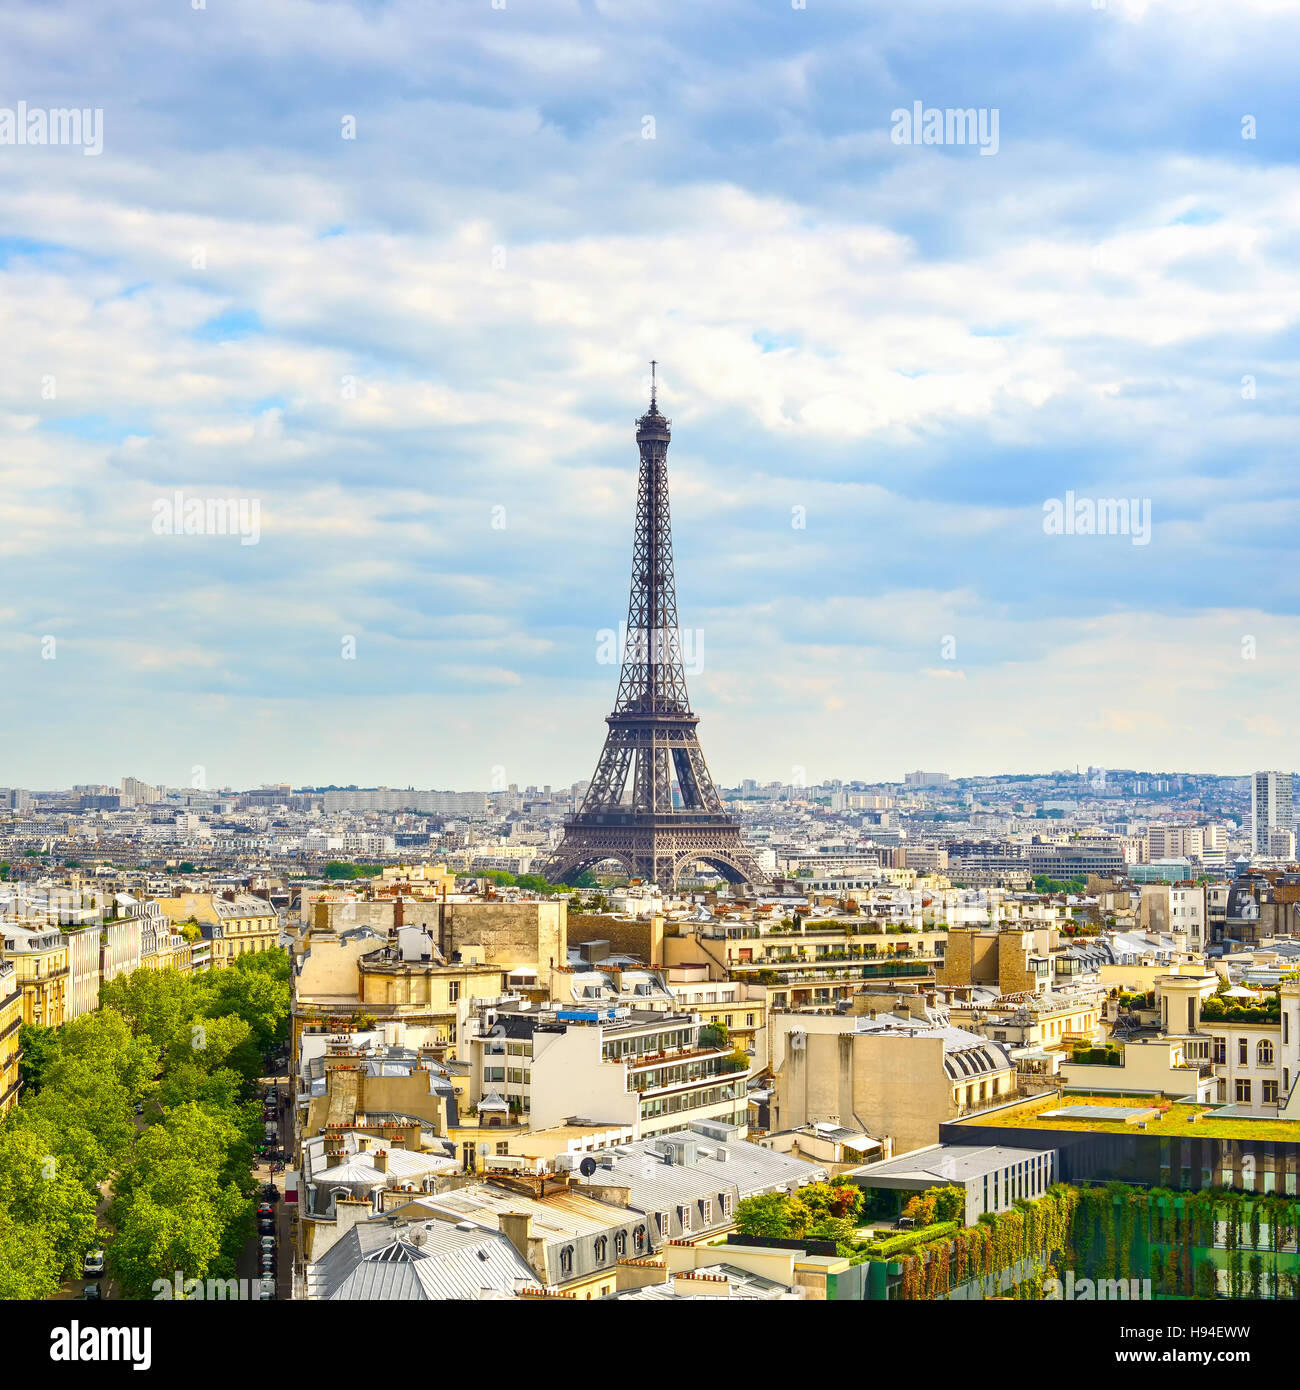 Eiffel-Turm Wahrzeichen, Blick vom Arc de Triomphe. Stadtbild von Paris. Frankreich, Europa. Stockfoto